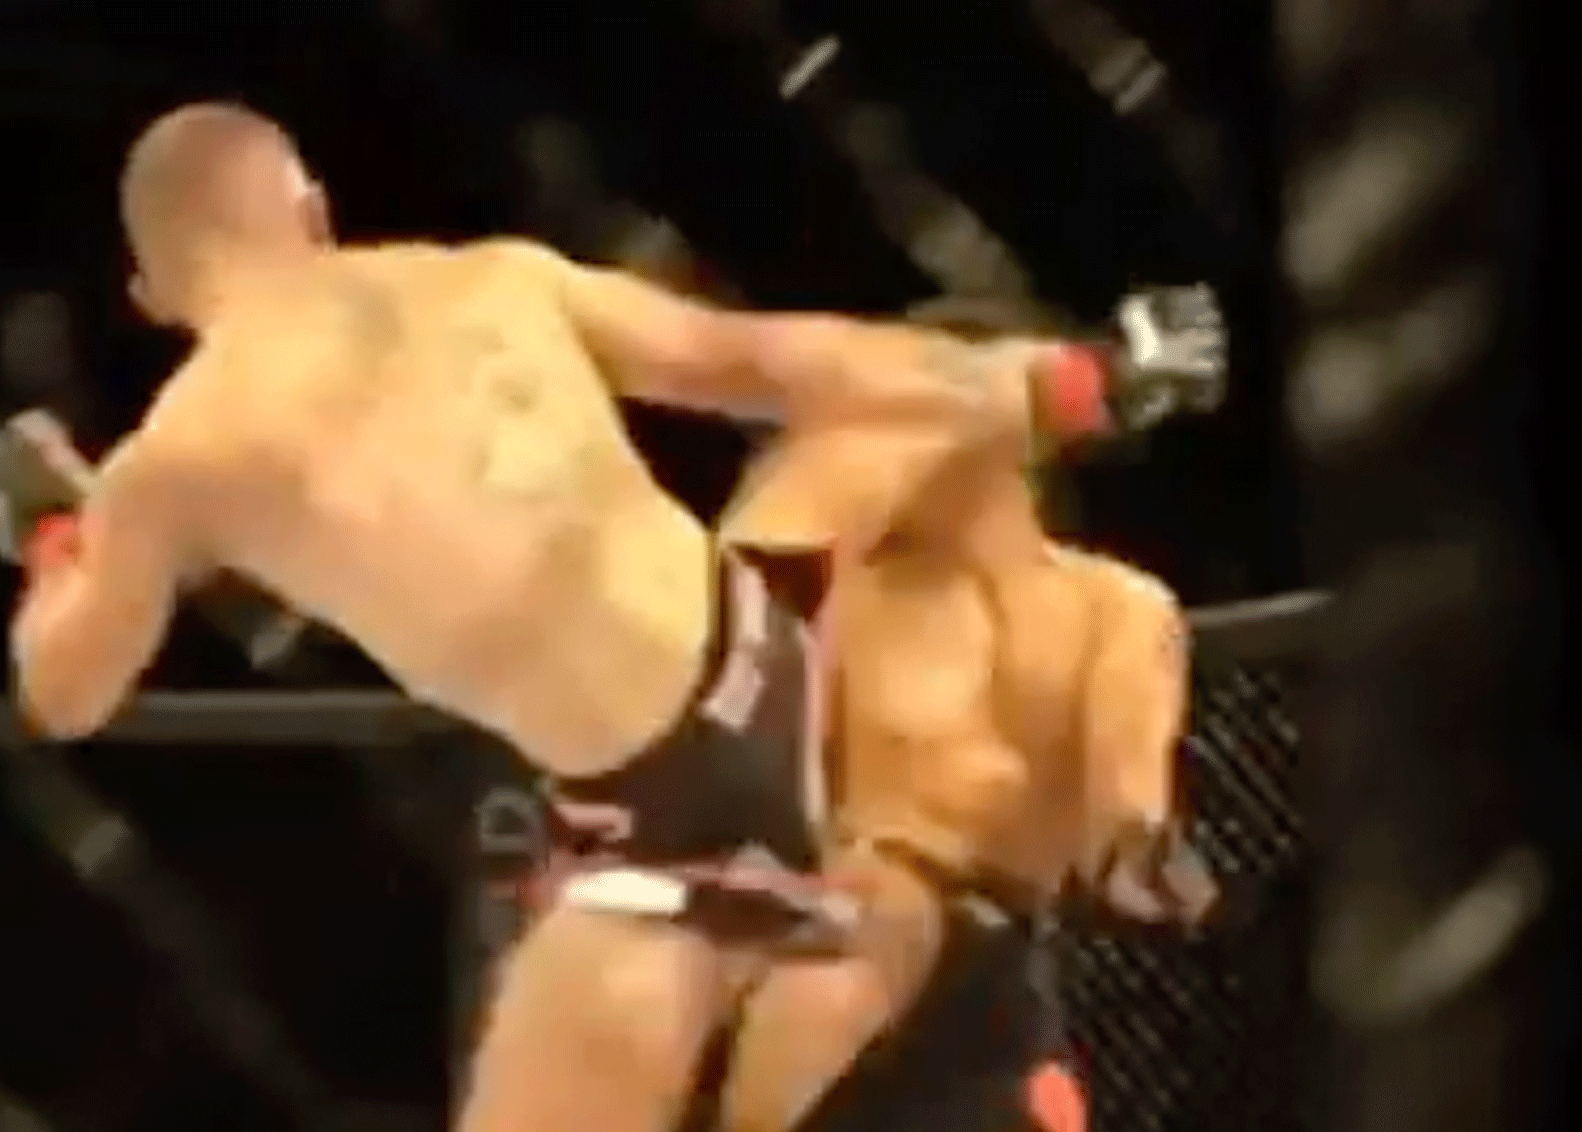 RAKET: MMA-vechter lanceert rivaal met explosieve kick (video)